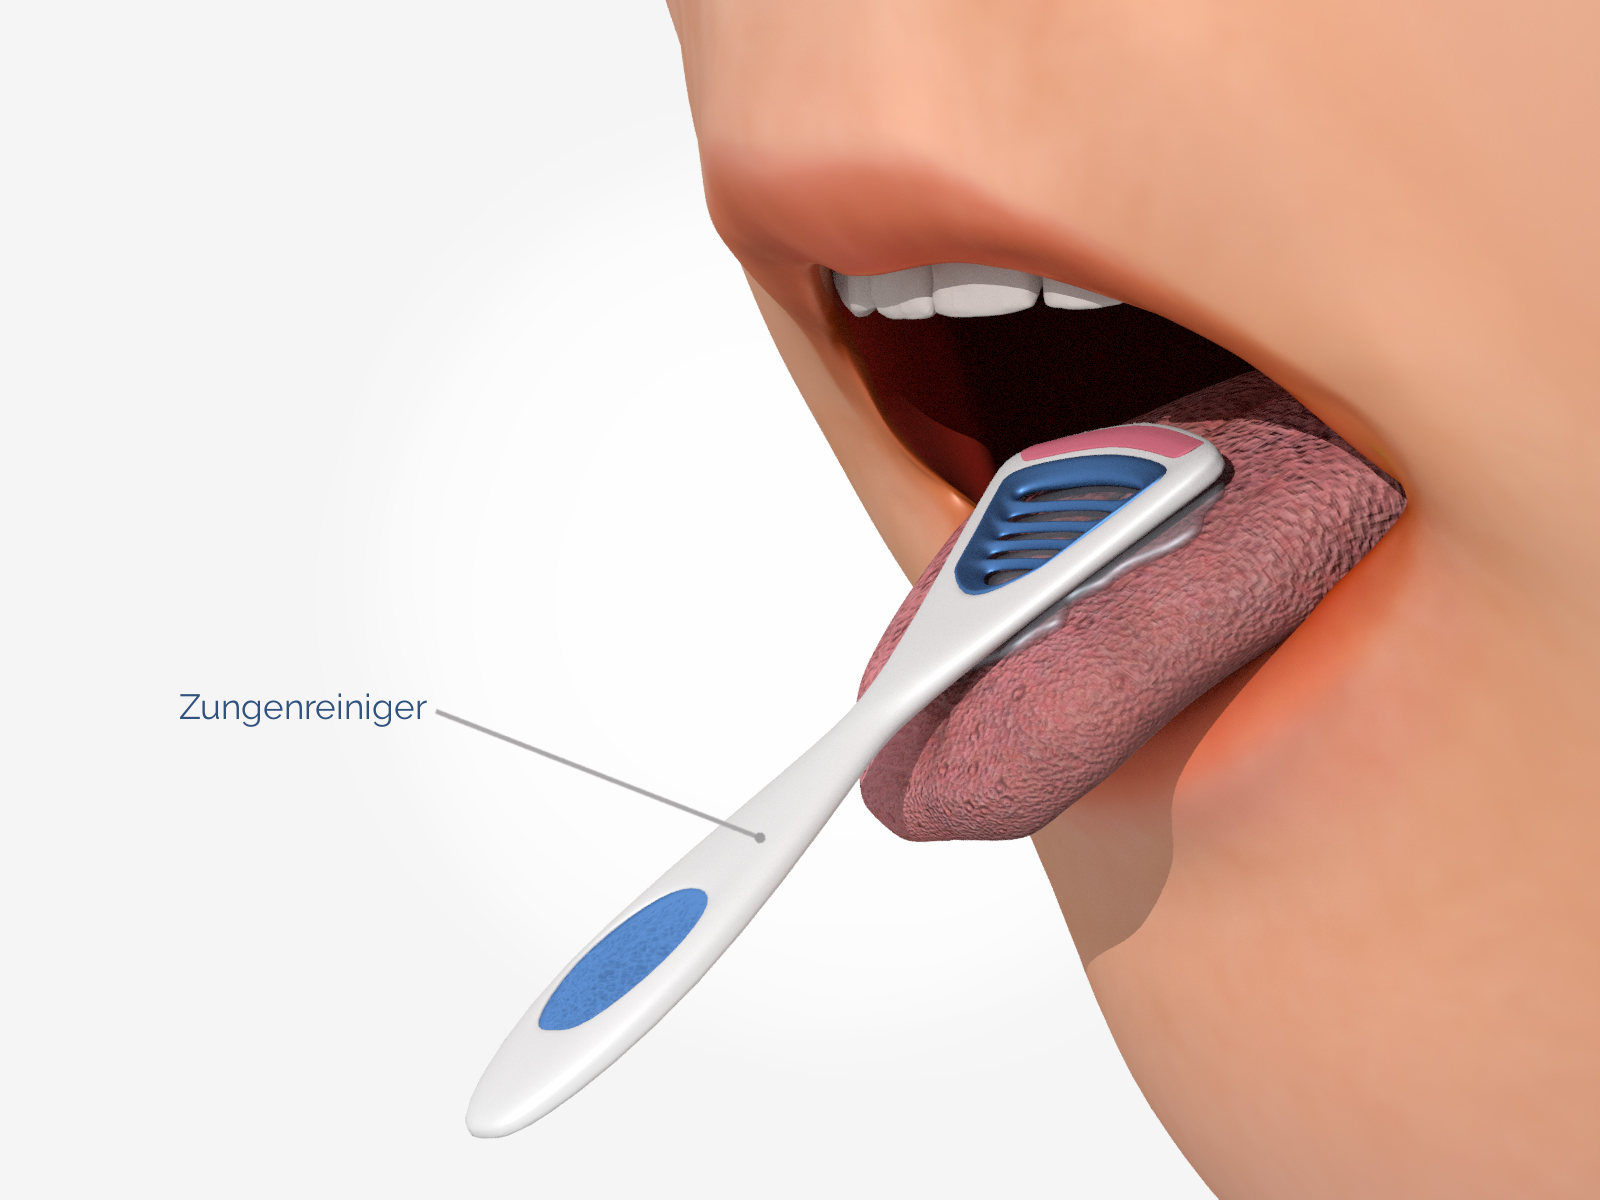 Zungenreiniger gegen Mundgeruch